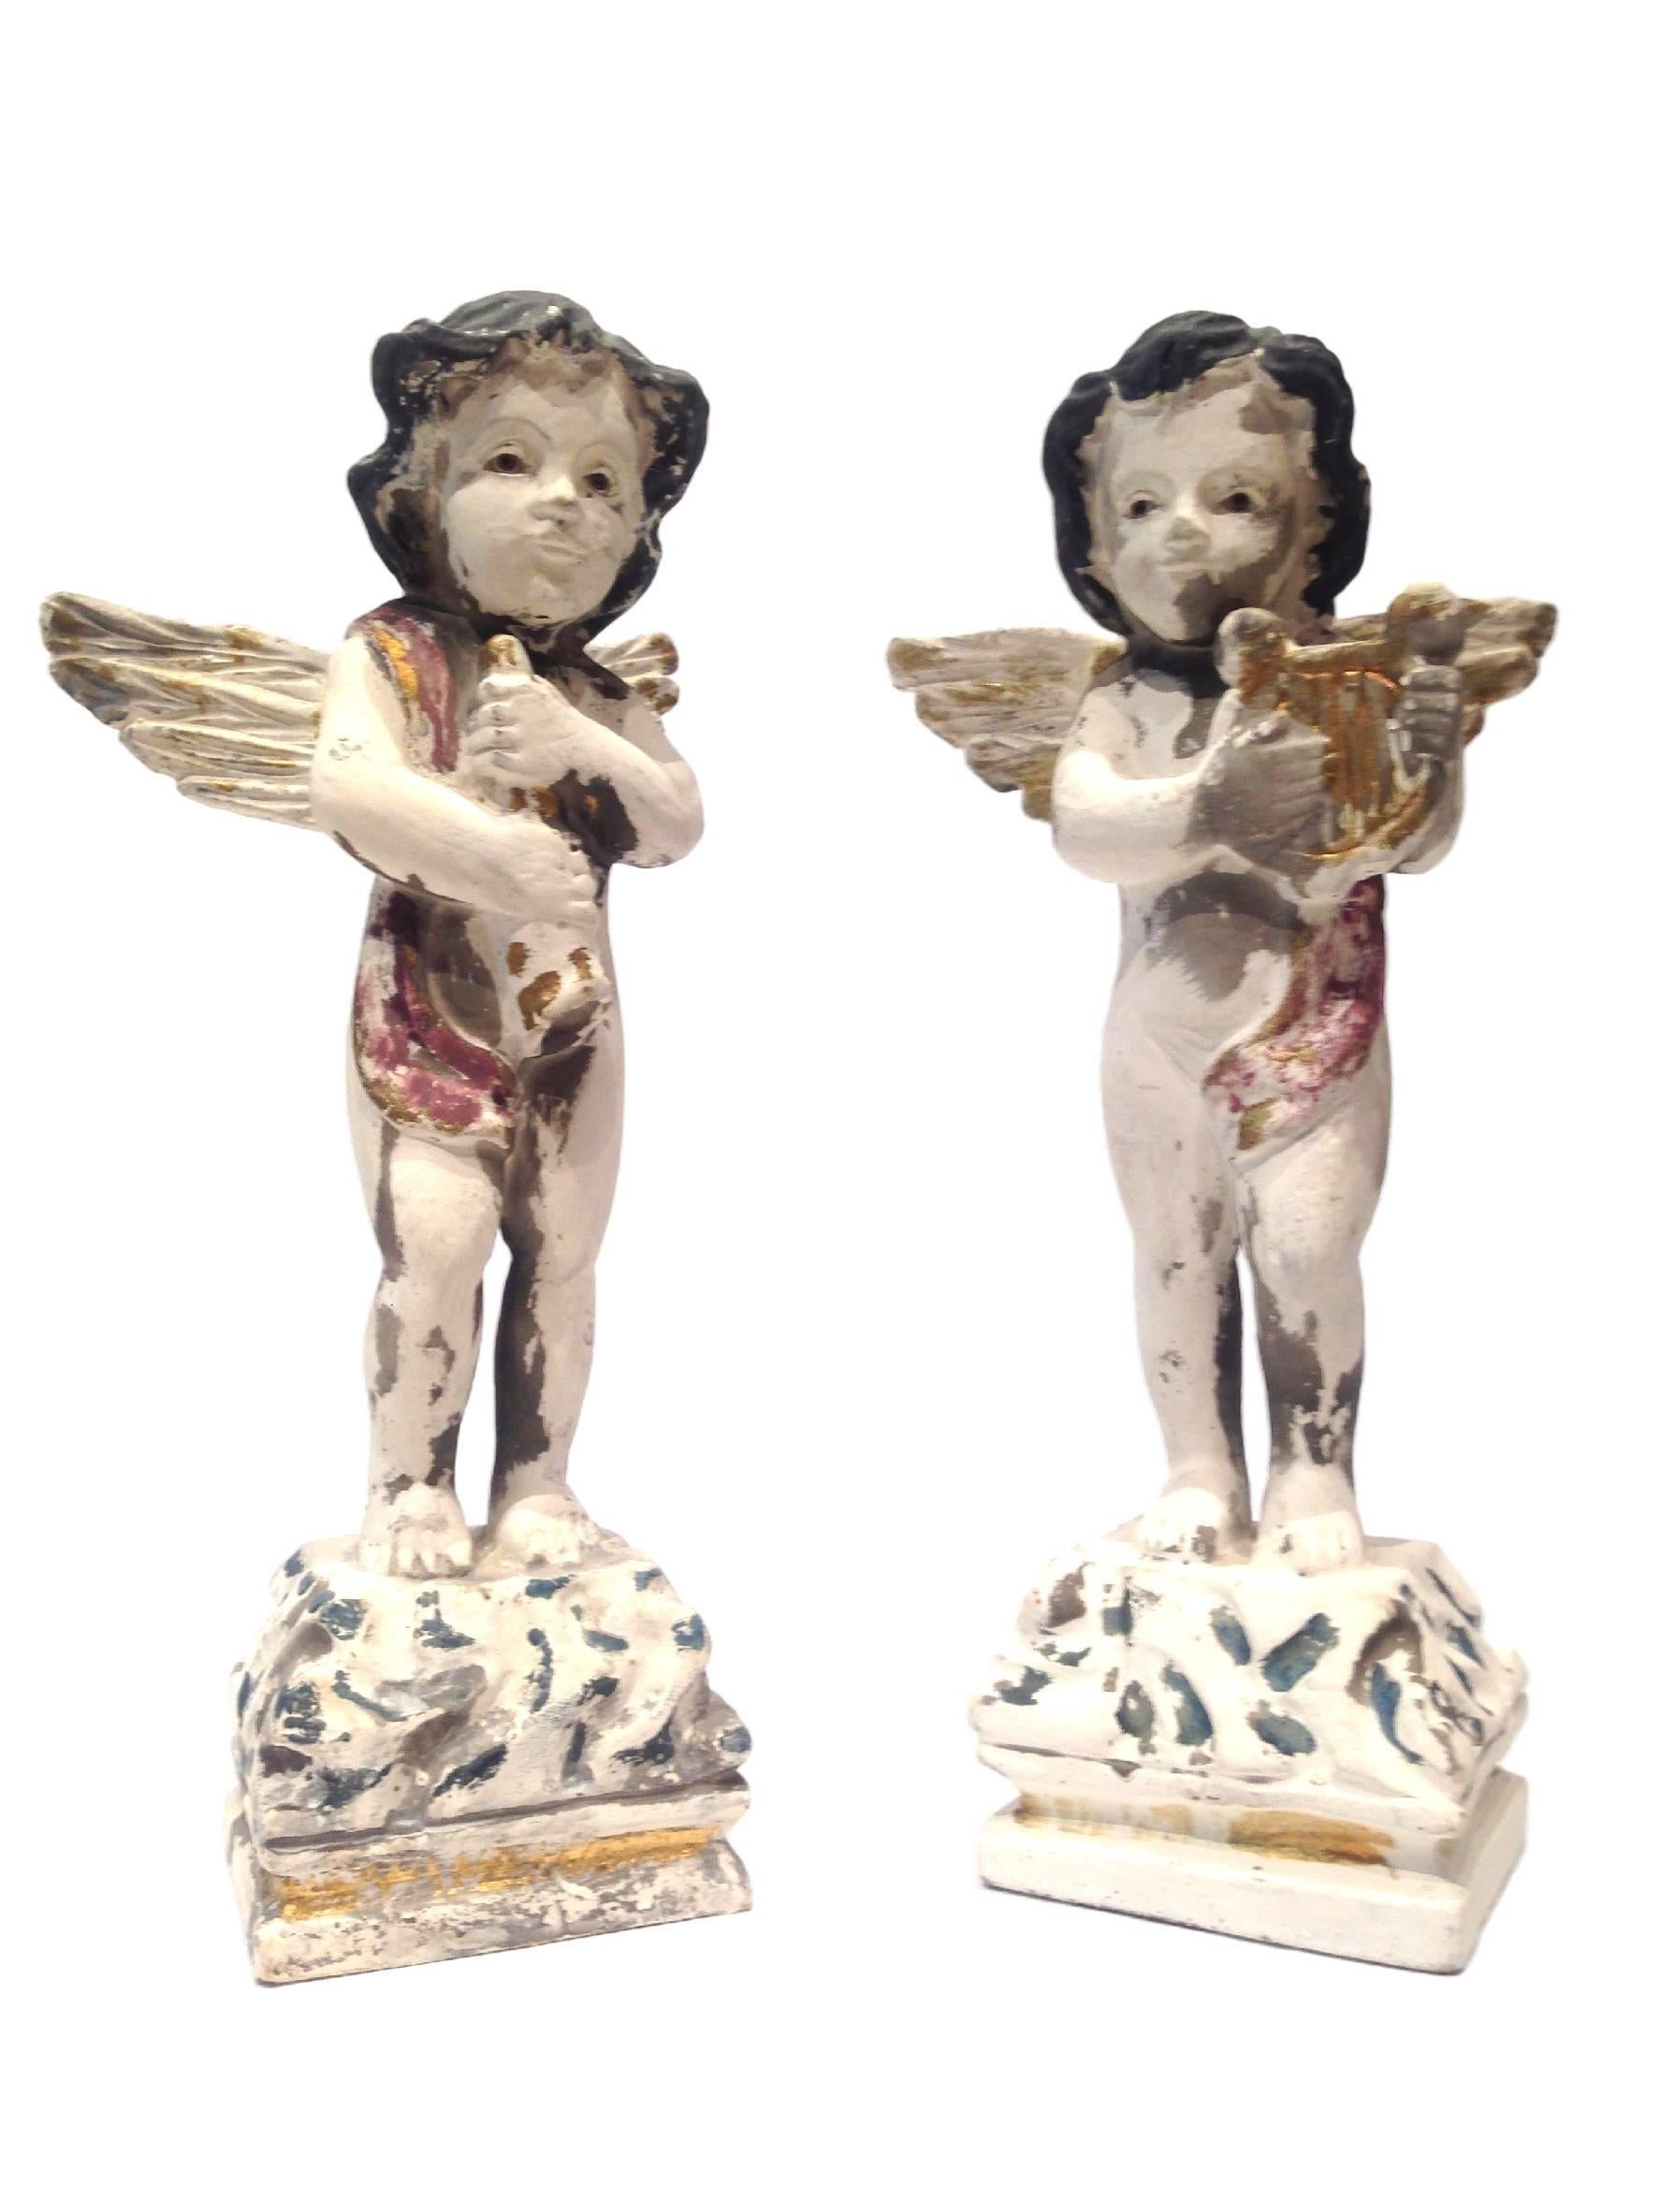 Belle paire de statues de chérubins musicaux peintes à la main.
Mesures : 10